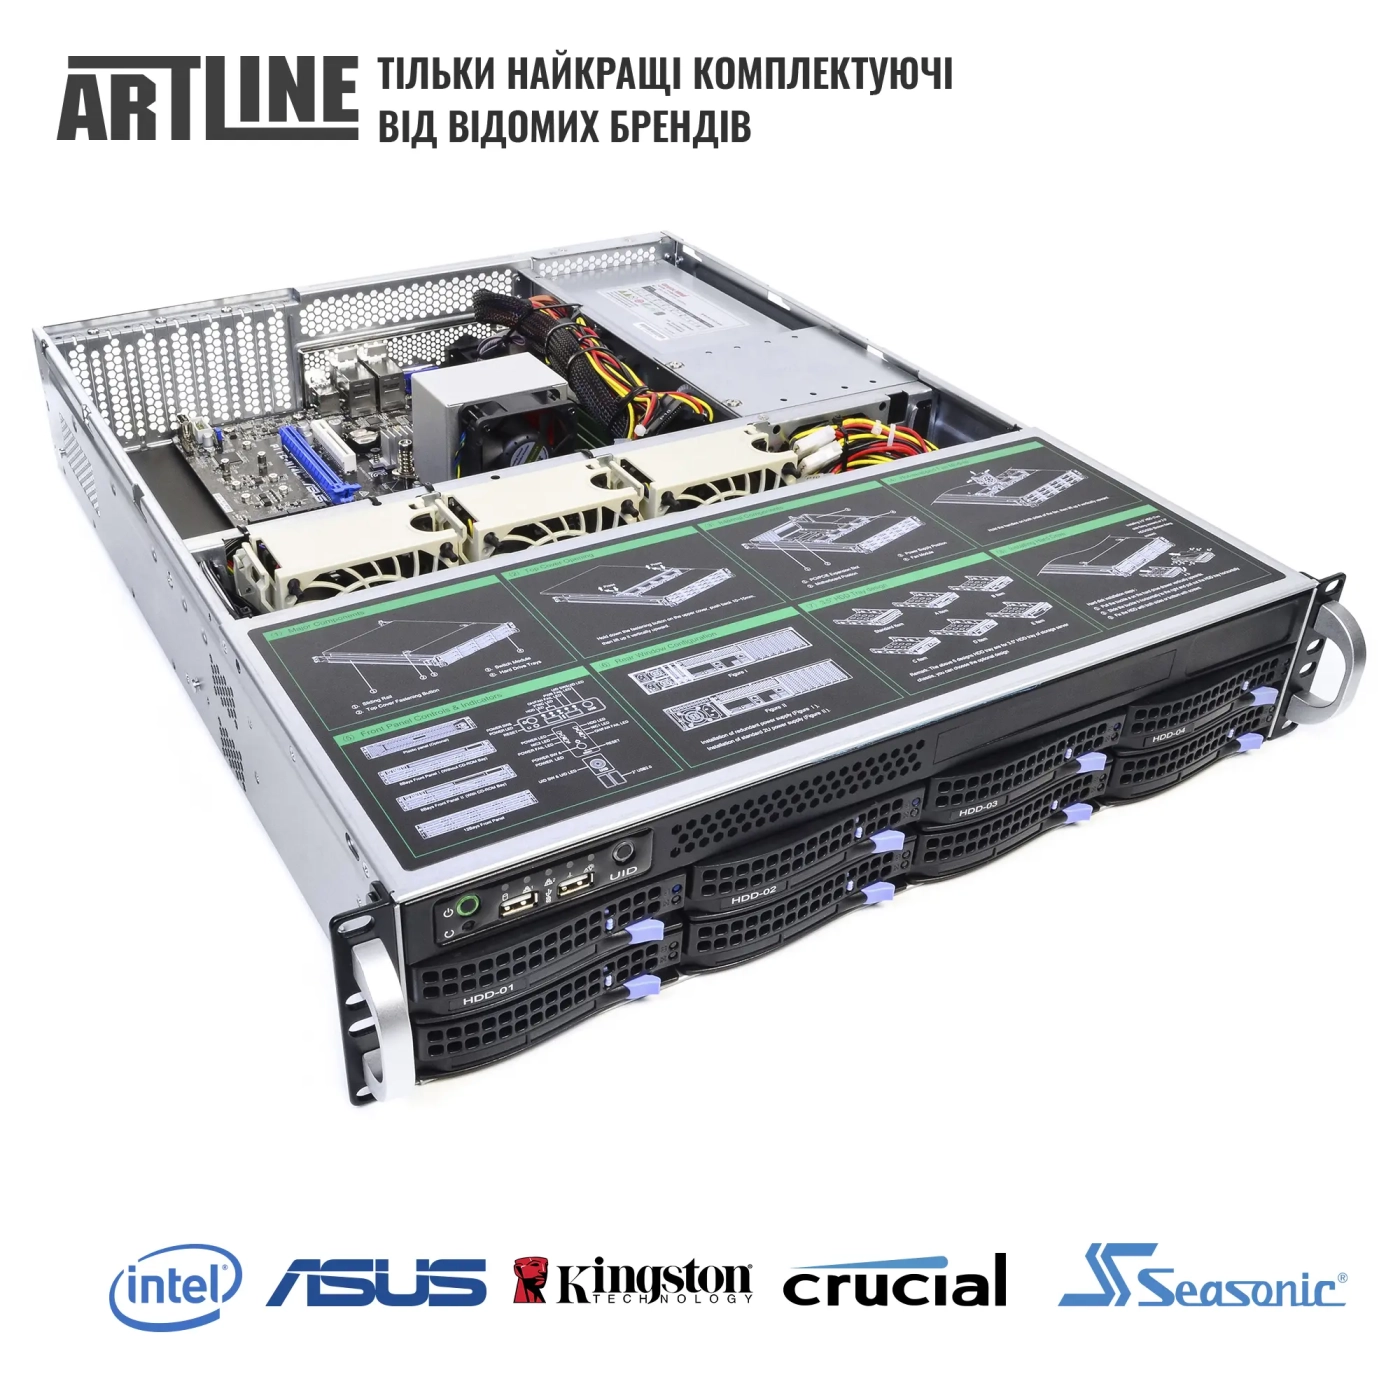 Купить Сервер ARTLINE Business R35 (R35v45) - фото 6